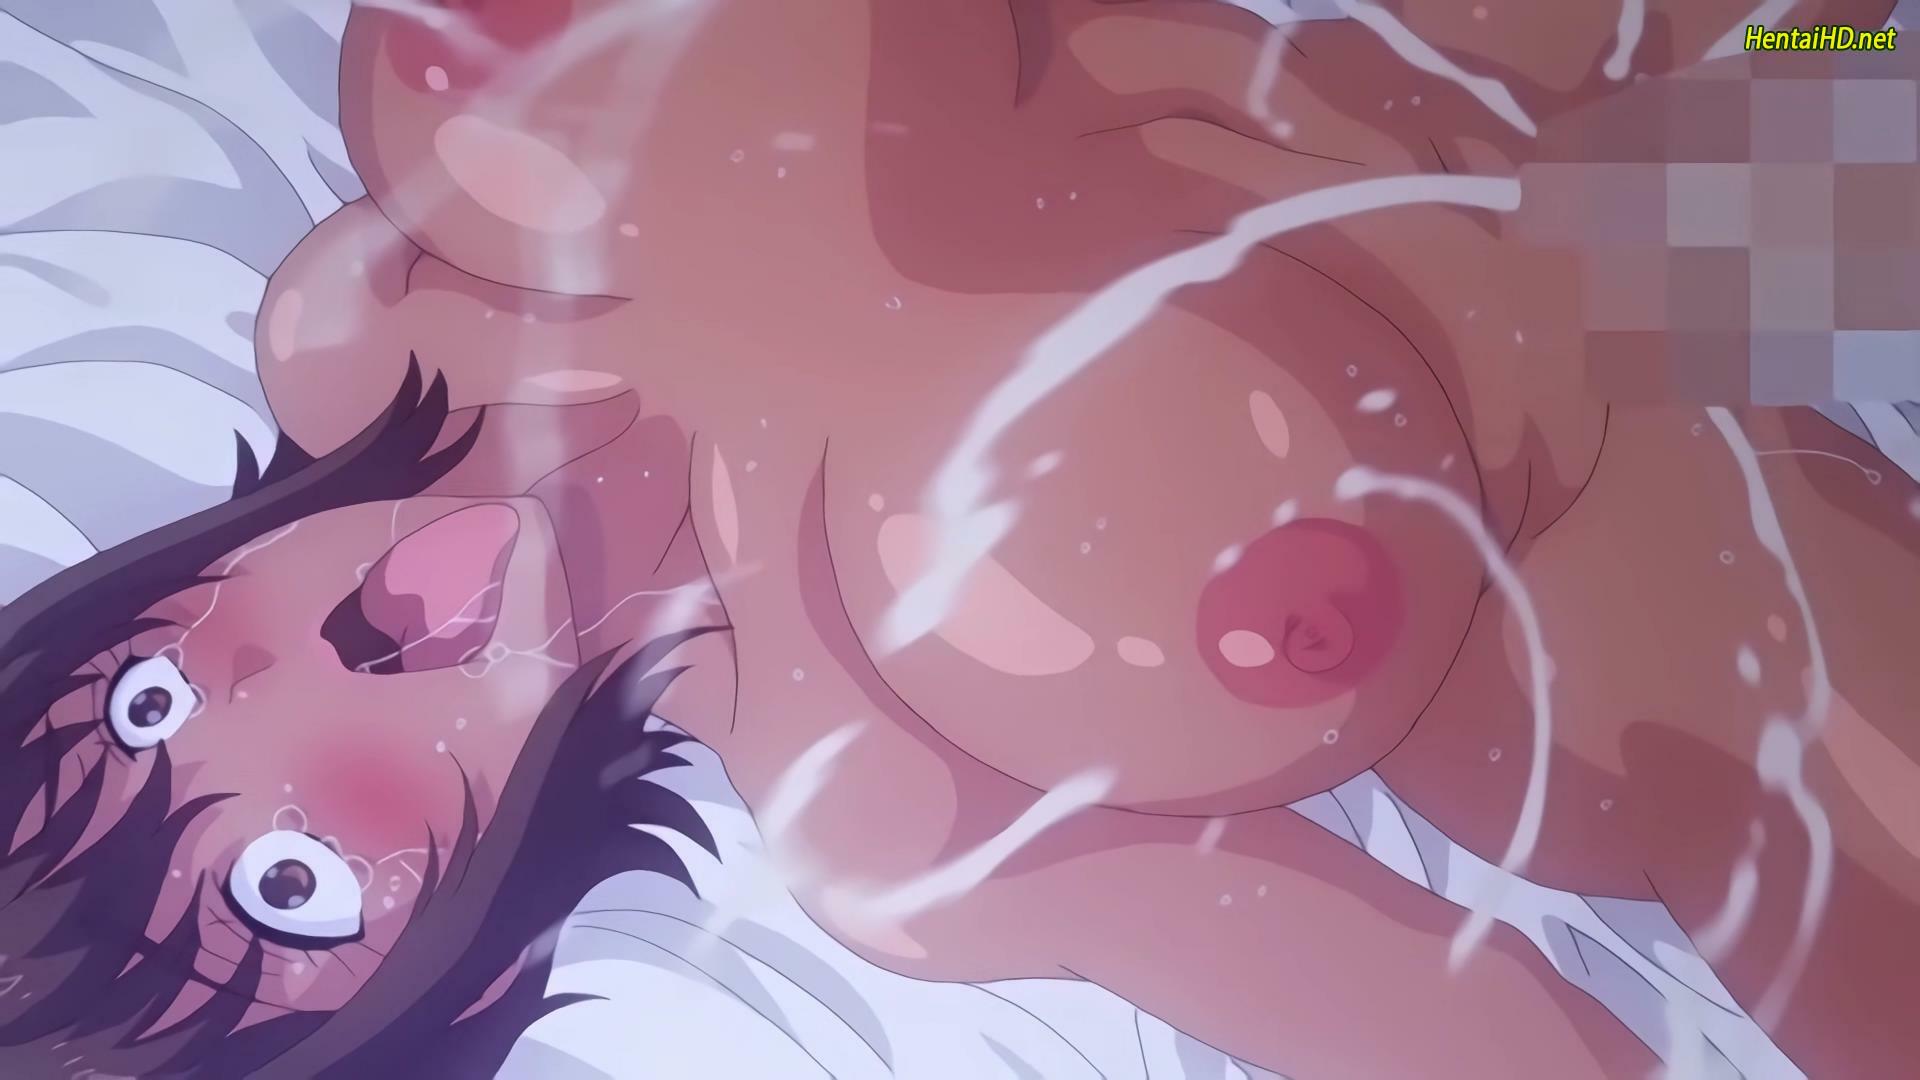 Kaa-chan no Tomodachi ni Shikotteru Tokoro Mirareta. The Animation, Episode 1 Spanish Subbed